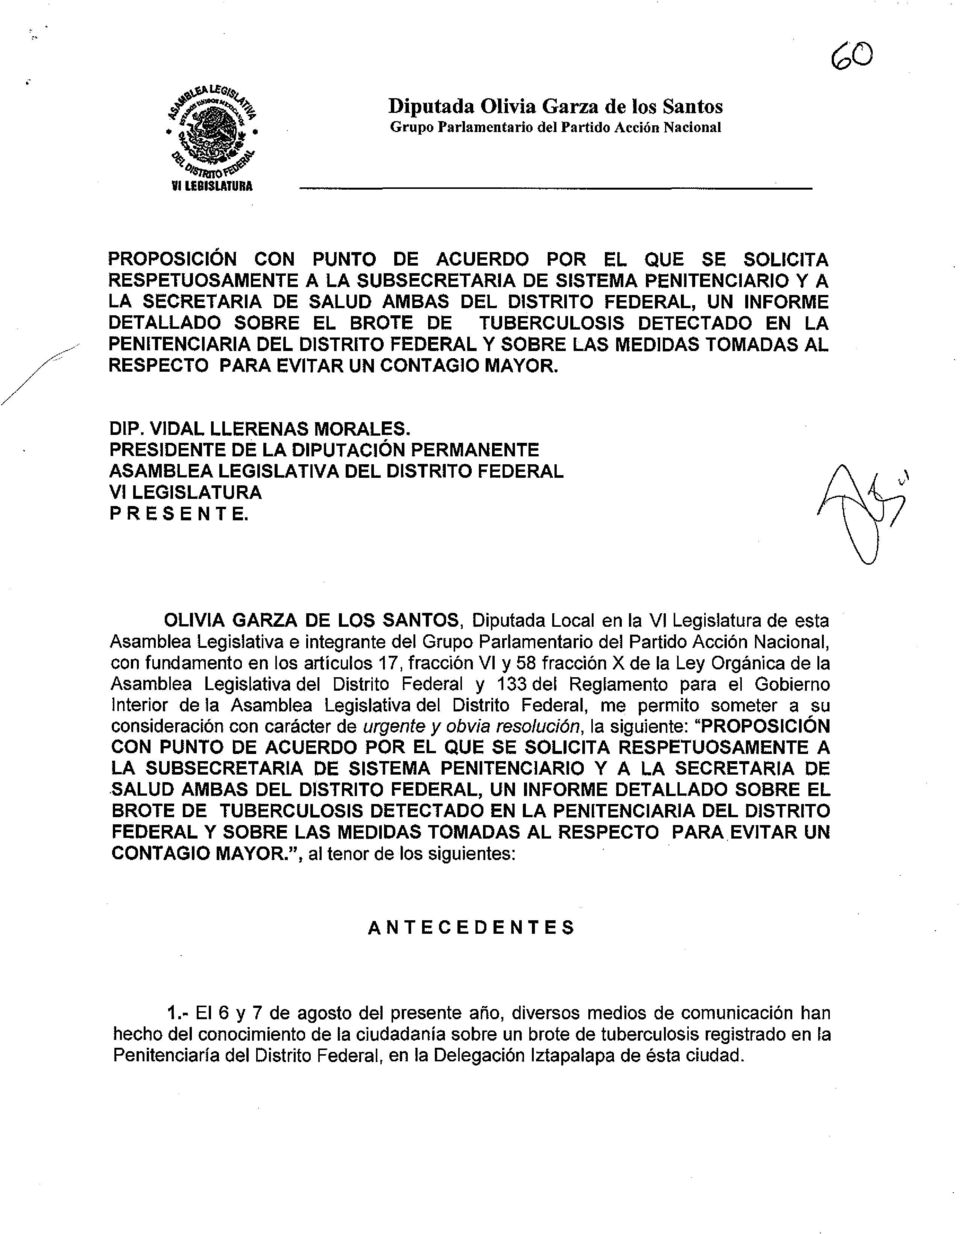 PRESIDENTE DE LA DIPUTACiÓN PERMANENTE ASAMBLEA LEGISLATIVA DEL DISTRITO FEDERAL VI LEGISLATURA P R E S E N T E.